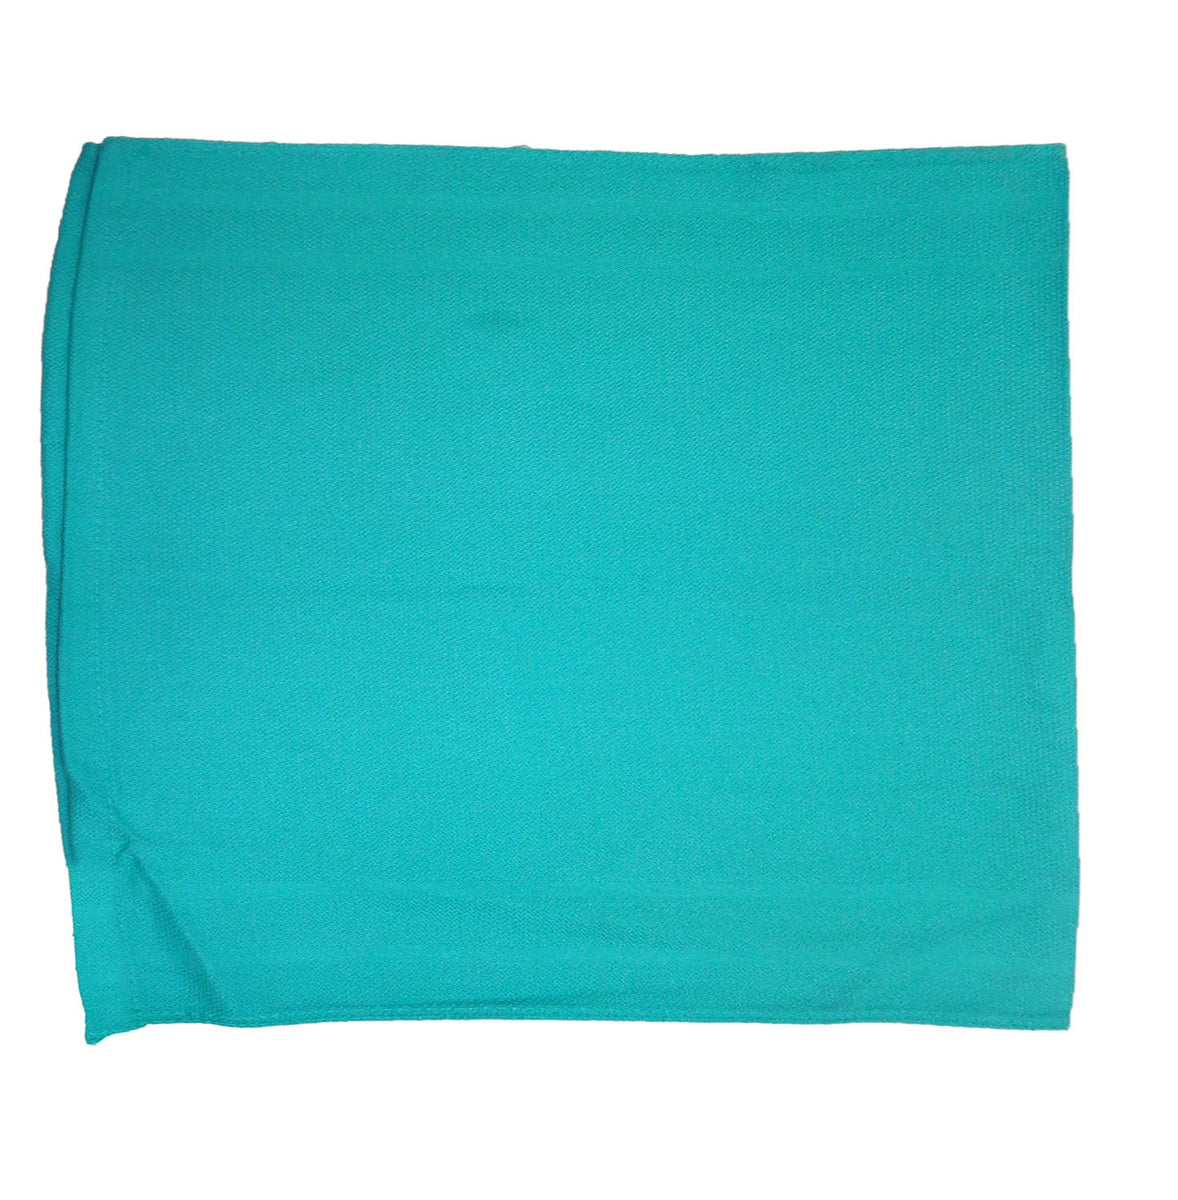 New Green Huck Towels – Mednik Riverbend